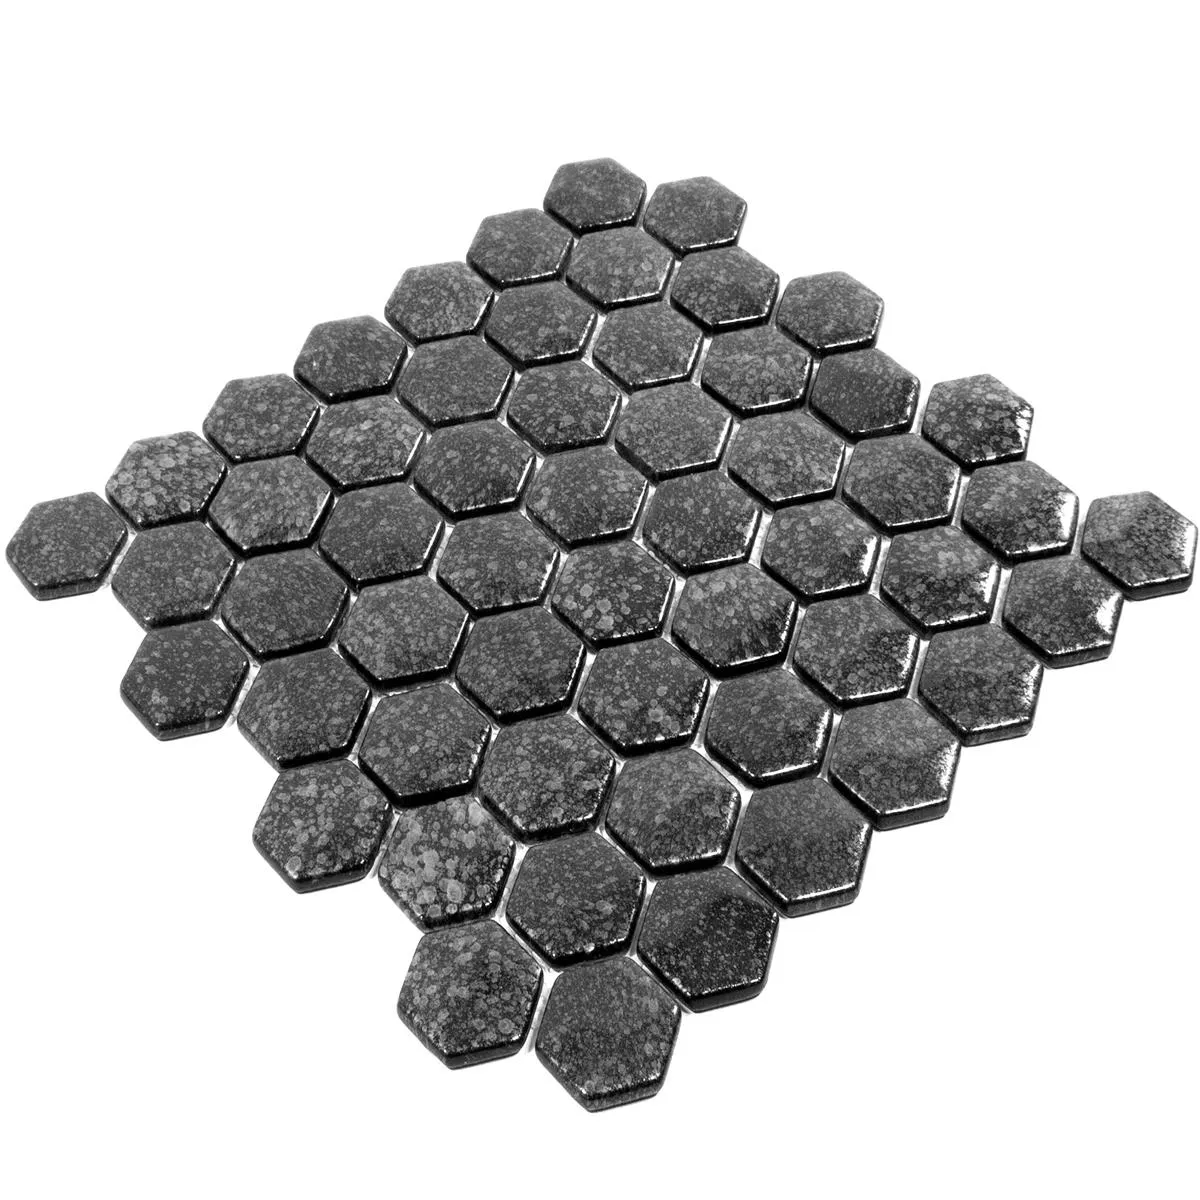 Sample Glass Mosaic Tiles Leopard Hexagon 3D Grey